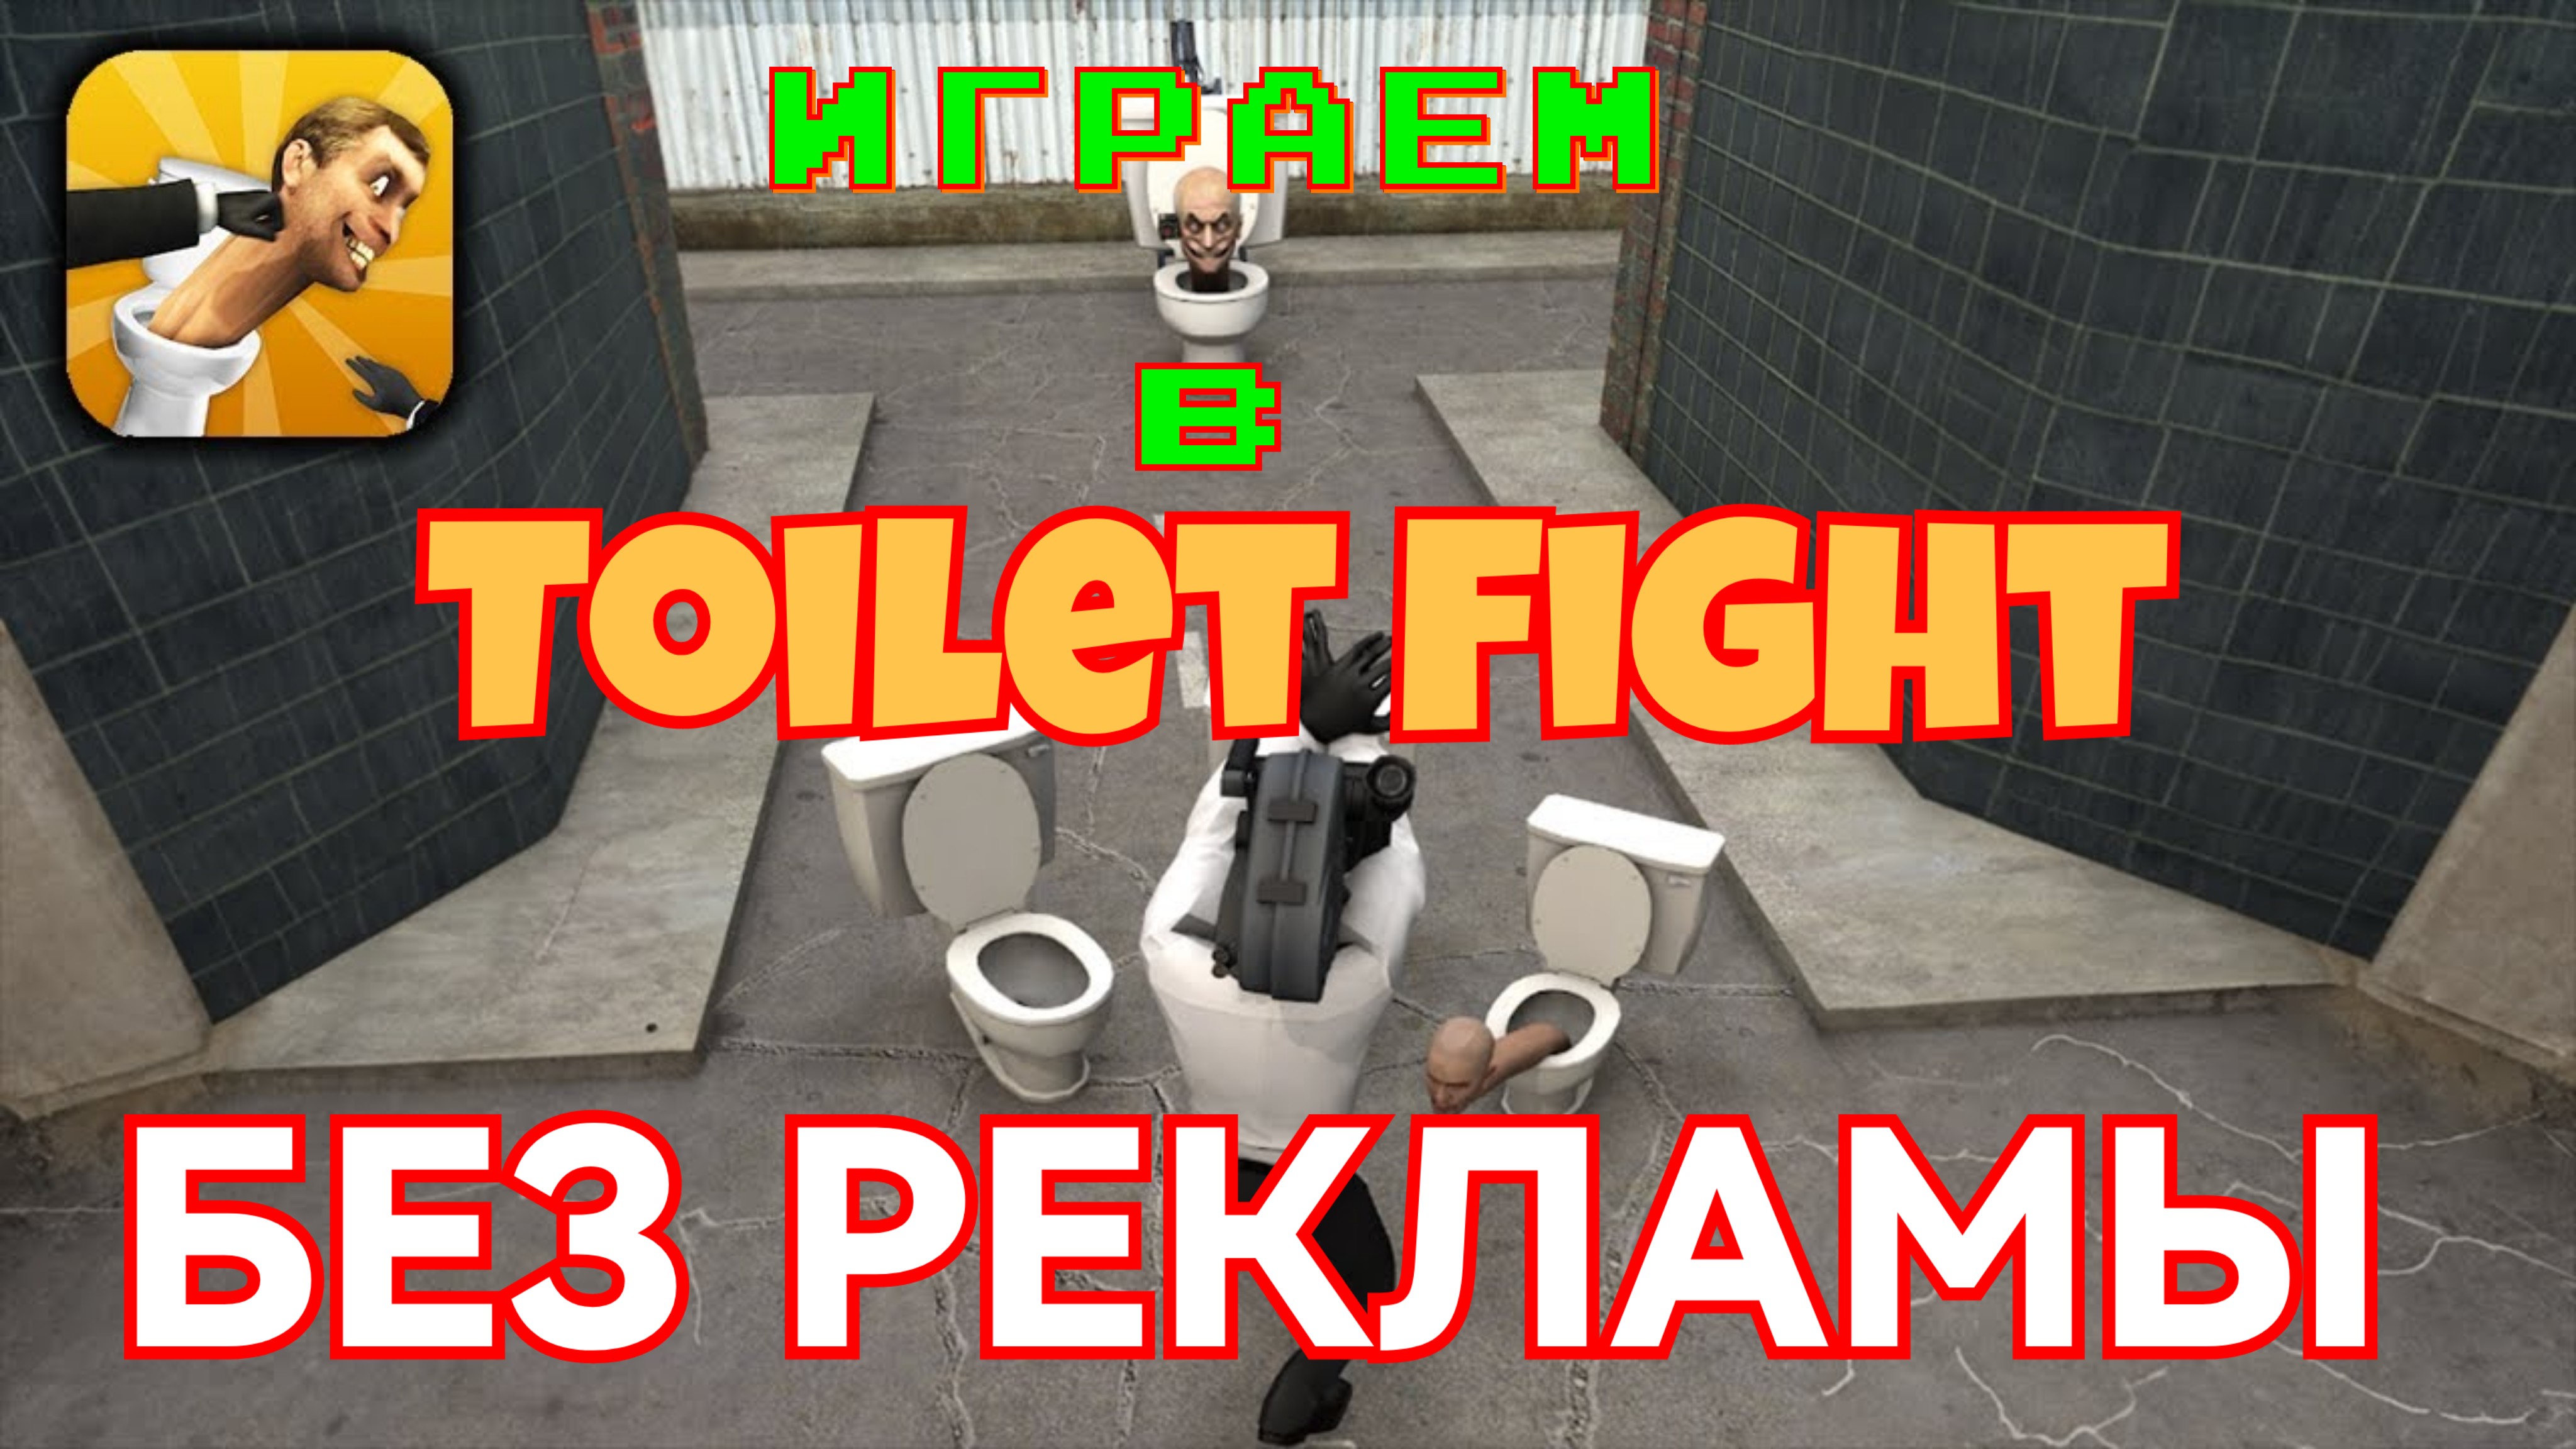 Промокод toilet fight open. Игра туалет файт открытый мир. Взломанный туалет Fight. Промокоды в игру Toilet Fight.